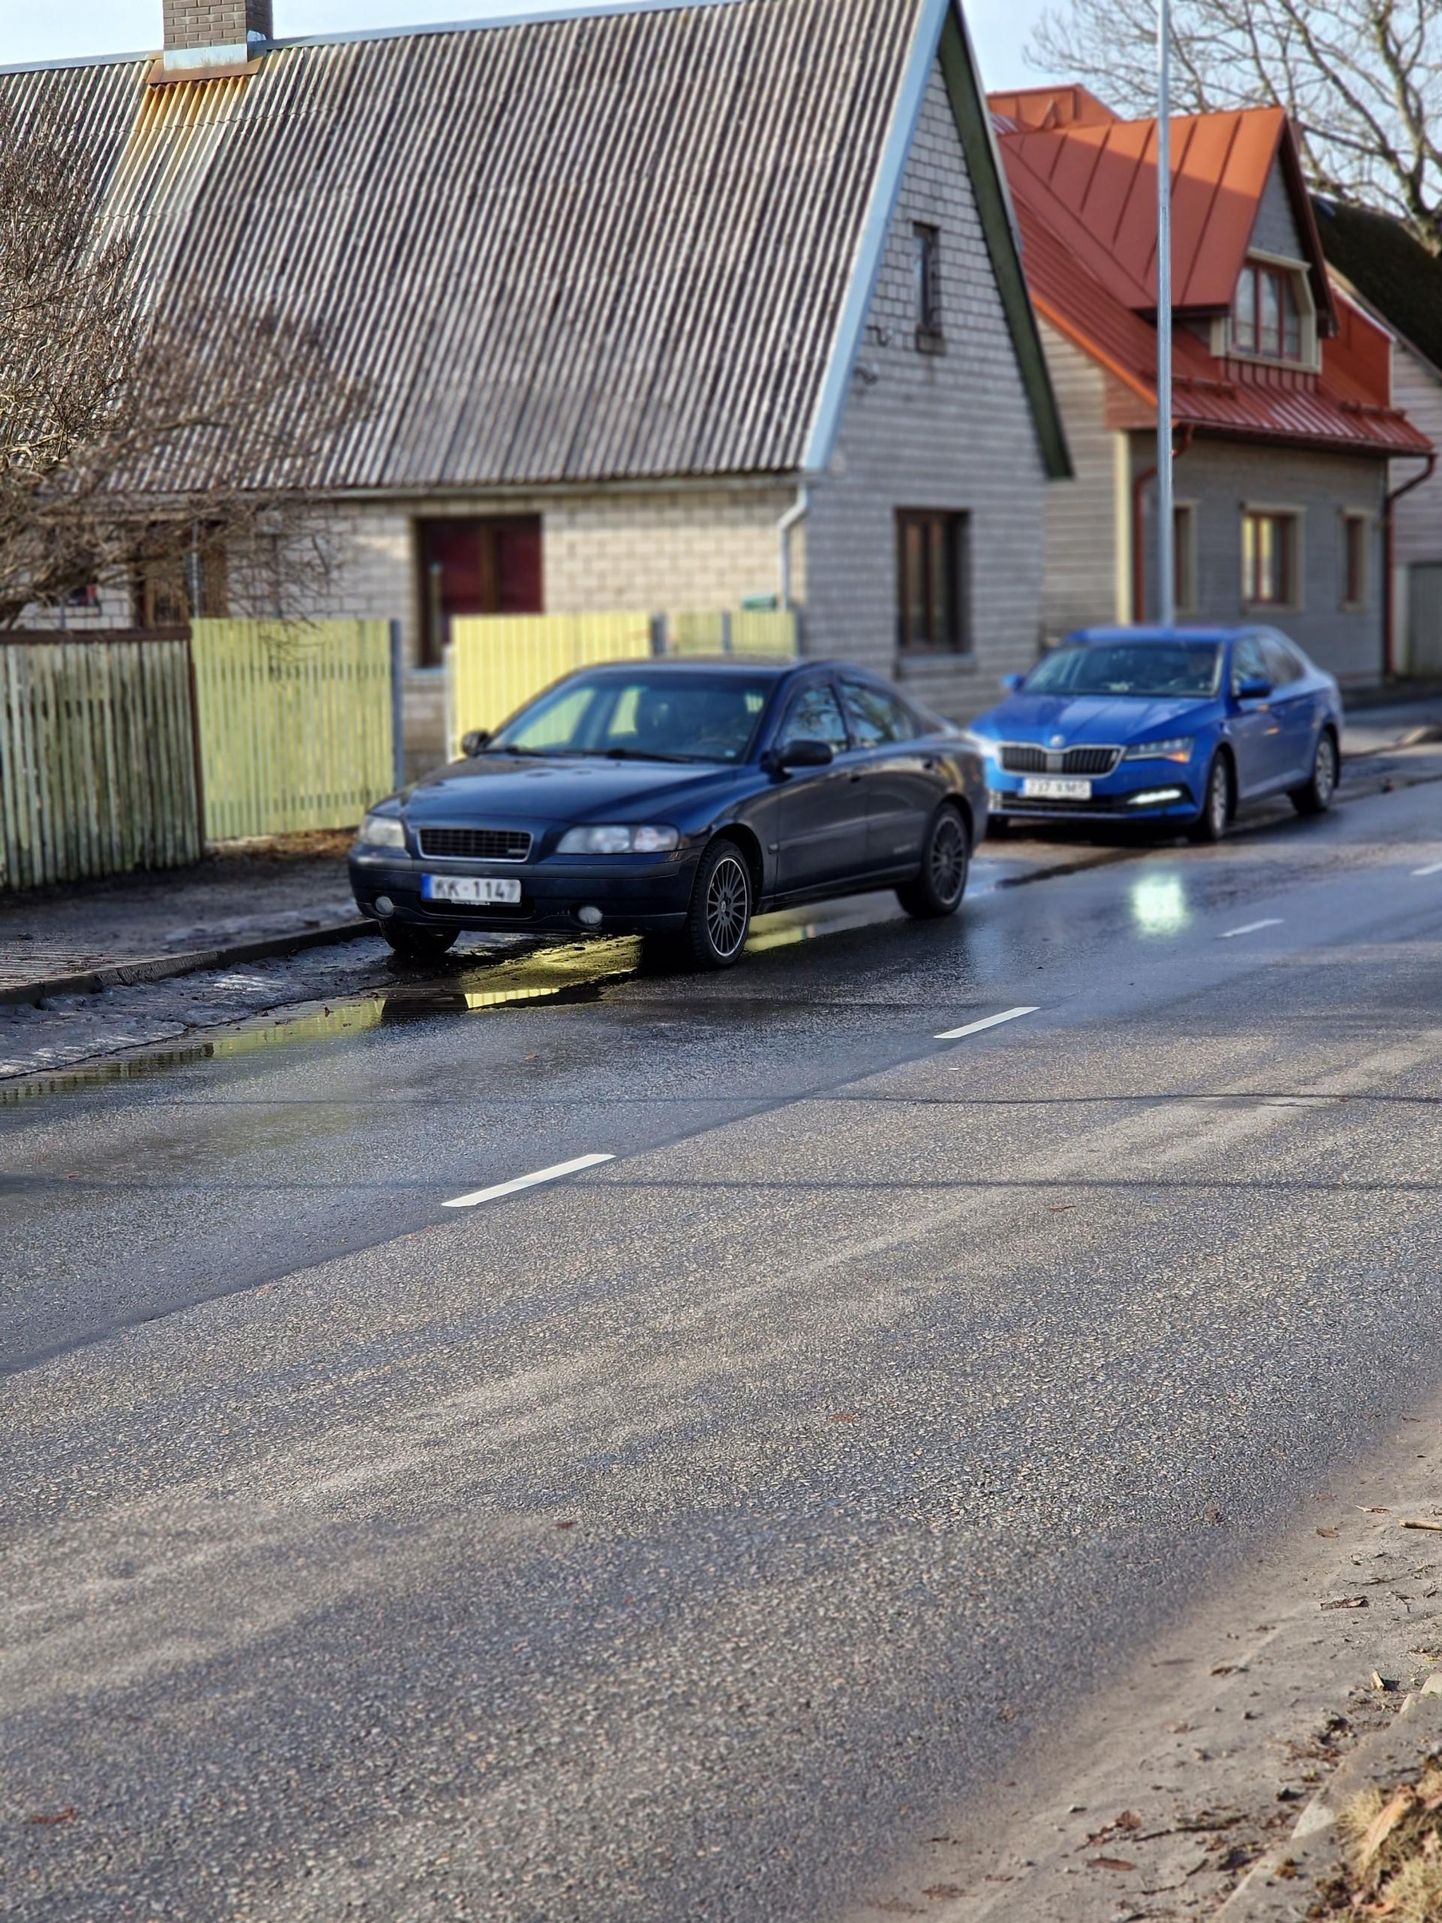 Pühapäeval tabas politsei Pärnus Karja tänavalt roolist purjus sõidukijuhi, kelle pidas kuriteos kahtlustatavana kinni. Tema sõiduk teisaldati politsei hoiukohta.